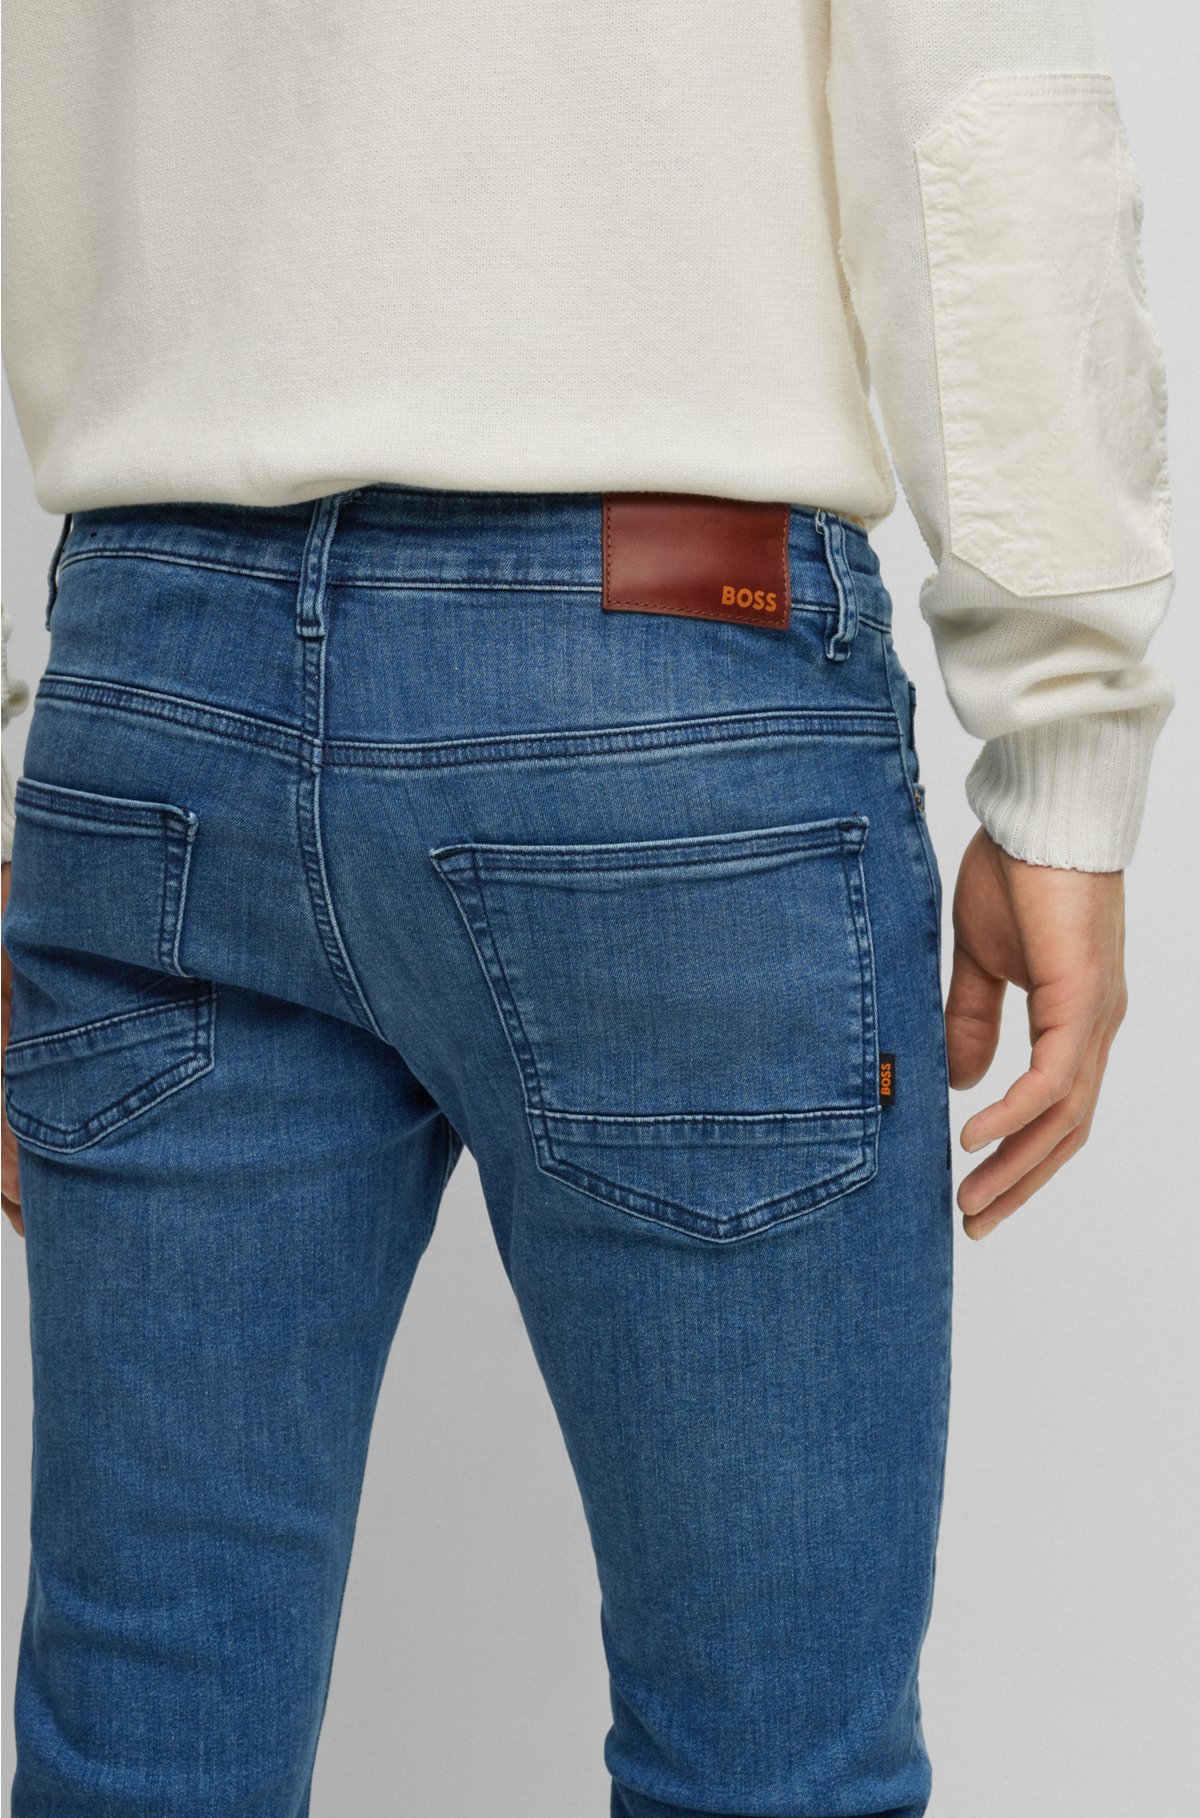 Slim-fit in BOSS super-stretch denim jeans blue -